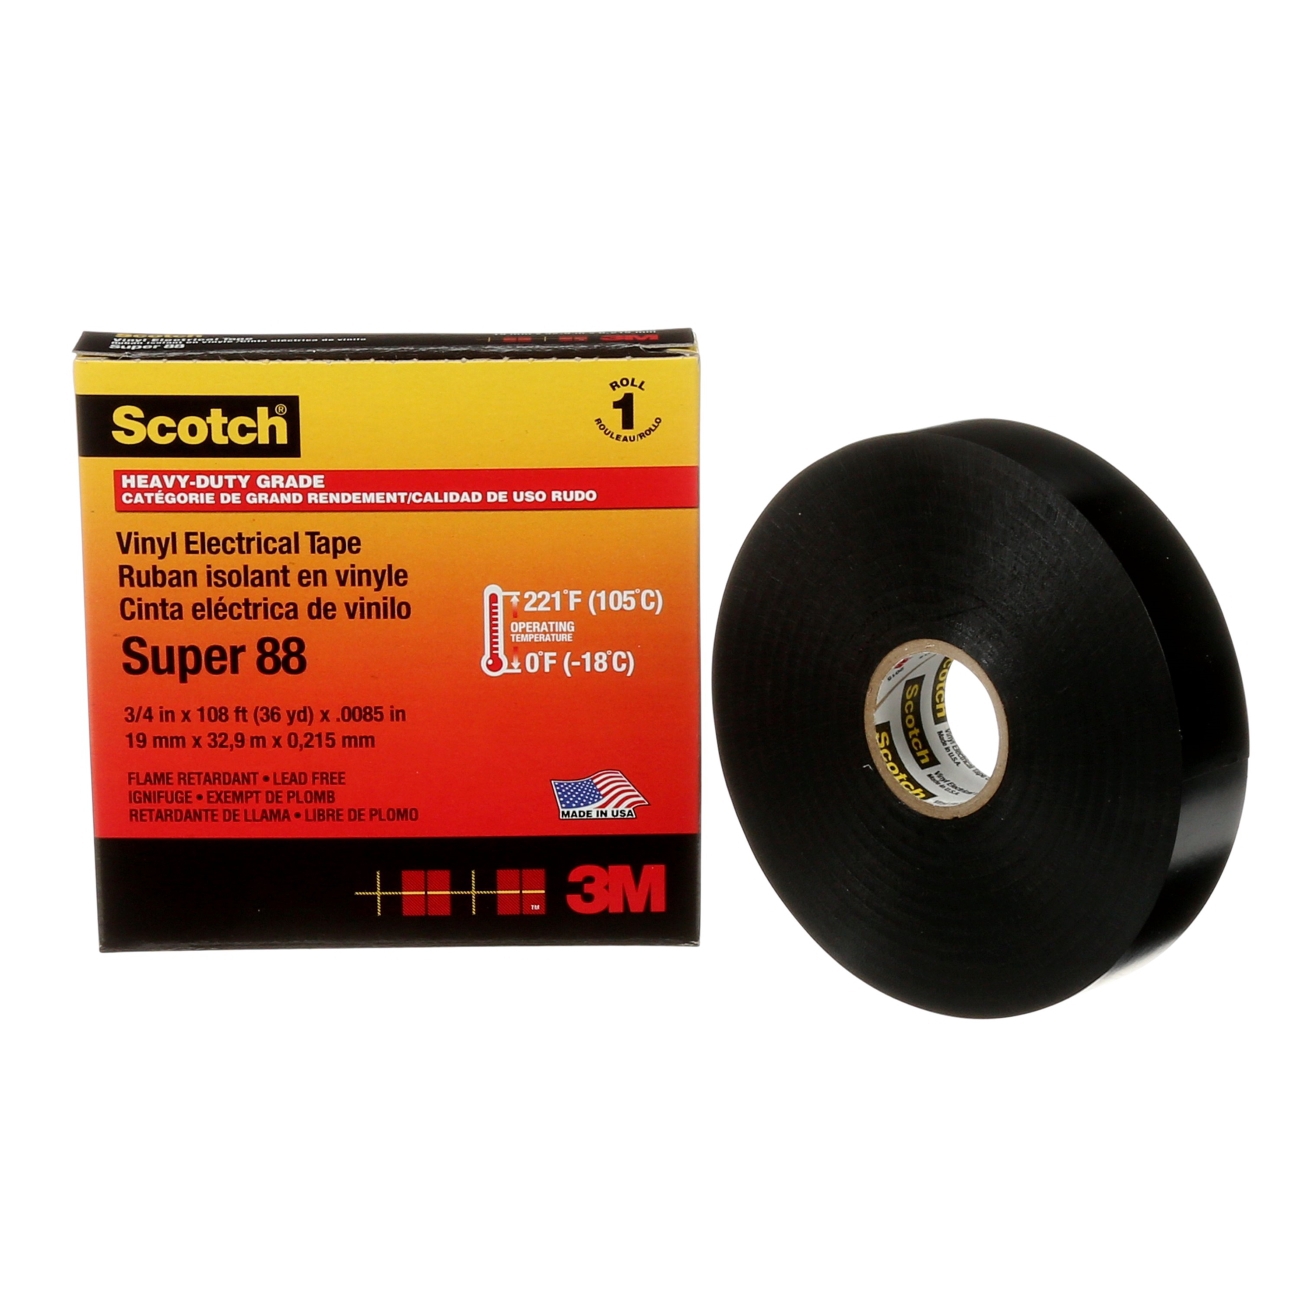 3M Scotch Super 88 Vinyl Electrical Insulating Tape, Black 19 mm x 20 m, 0.22 mm